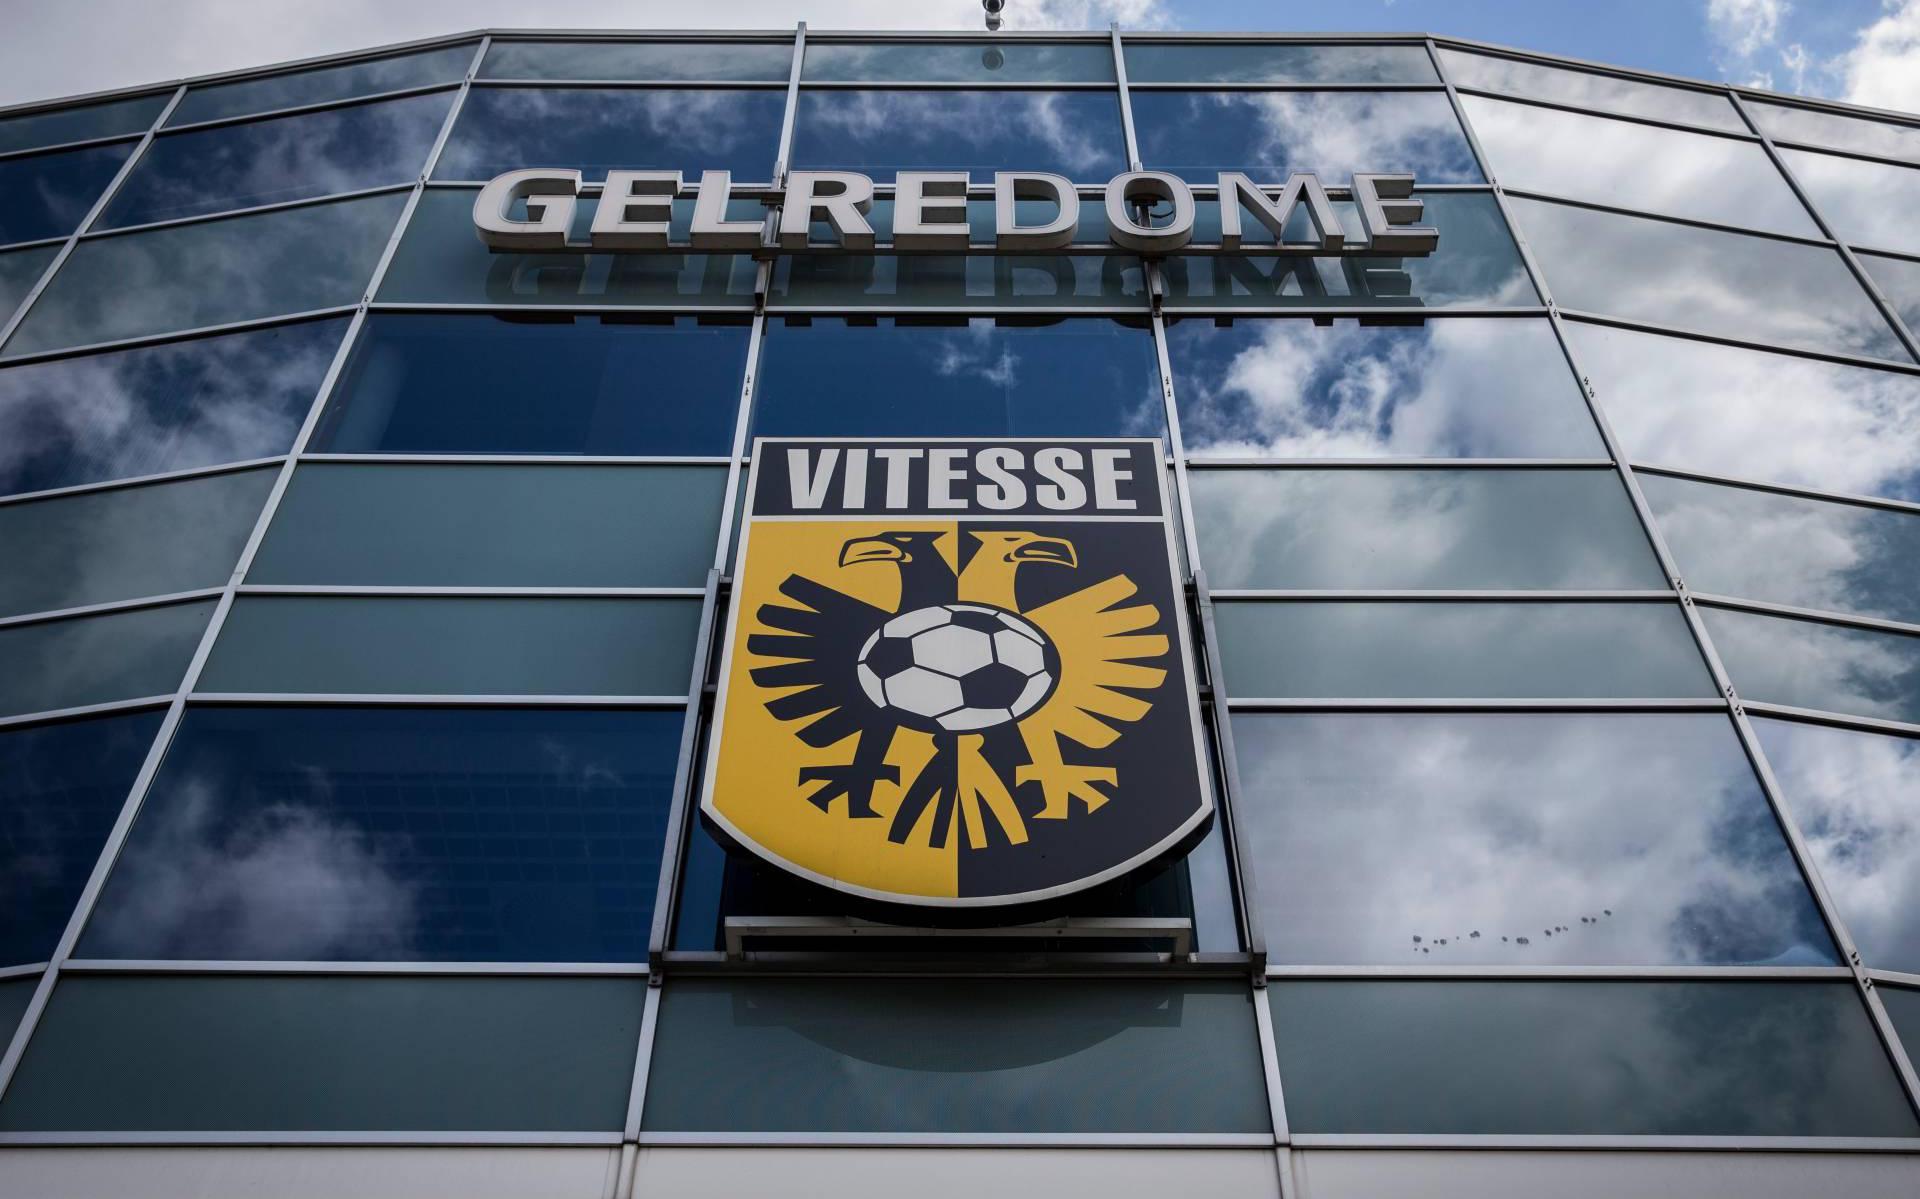 Vitesse en eigenaar Gelredome komen er niet uit bij rechter